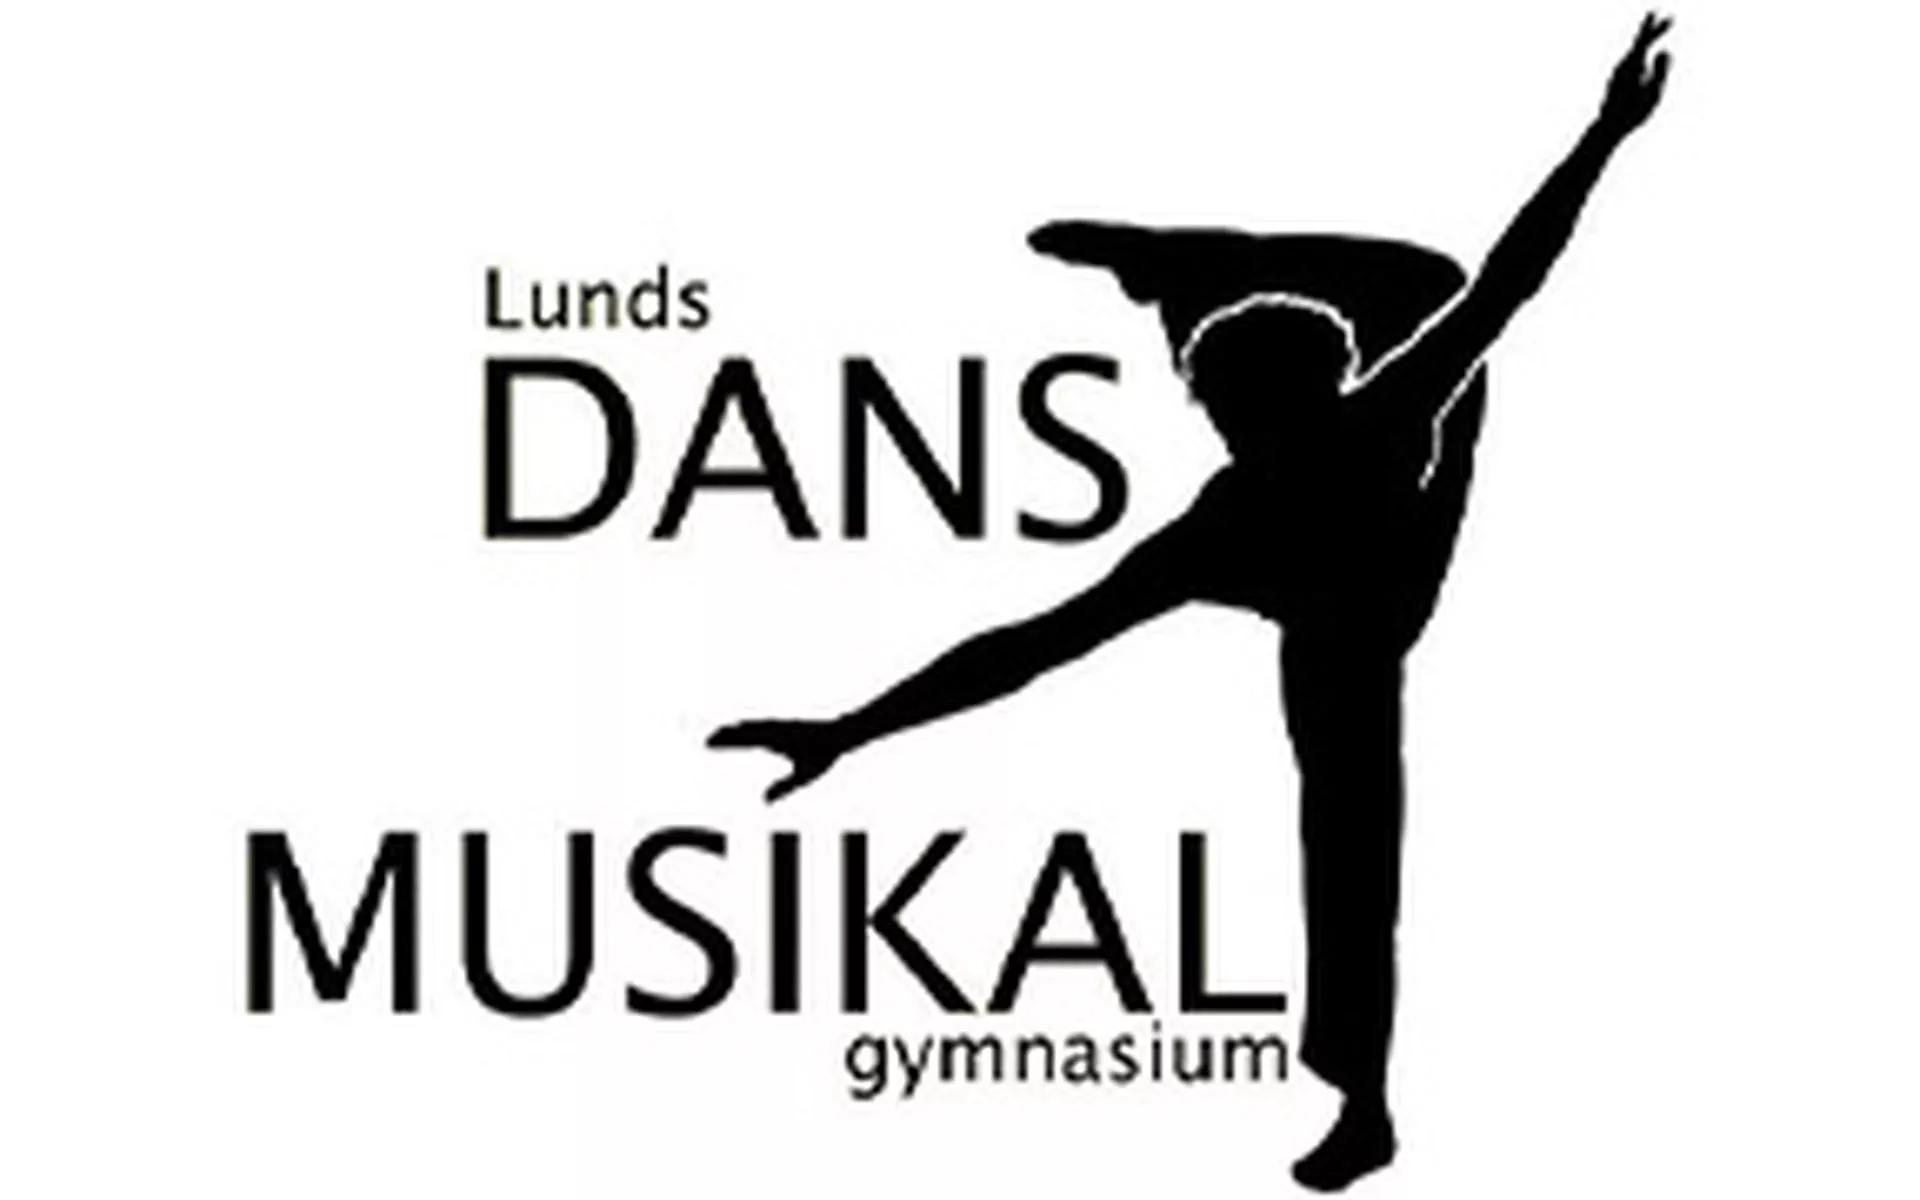 Lunds dans- och musikalgymnasium